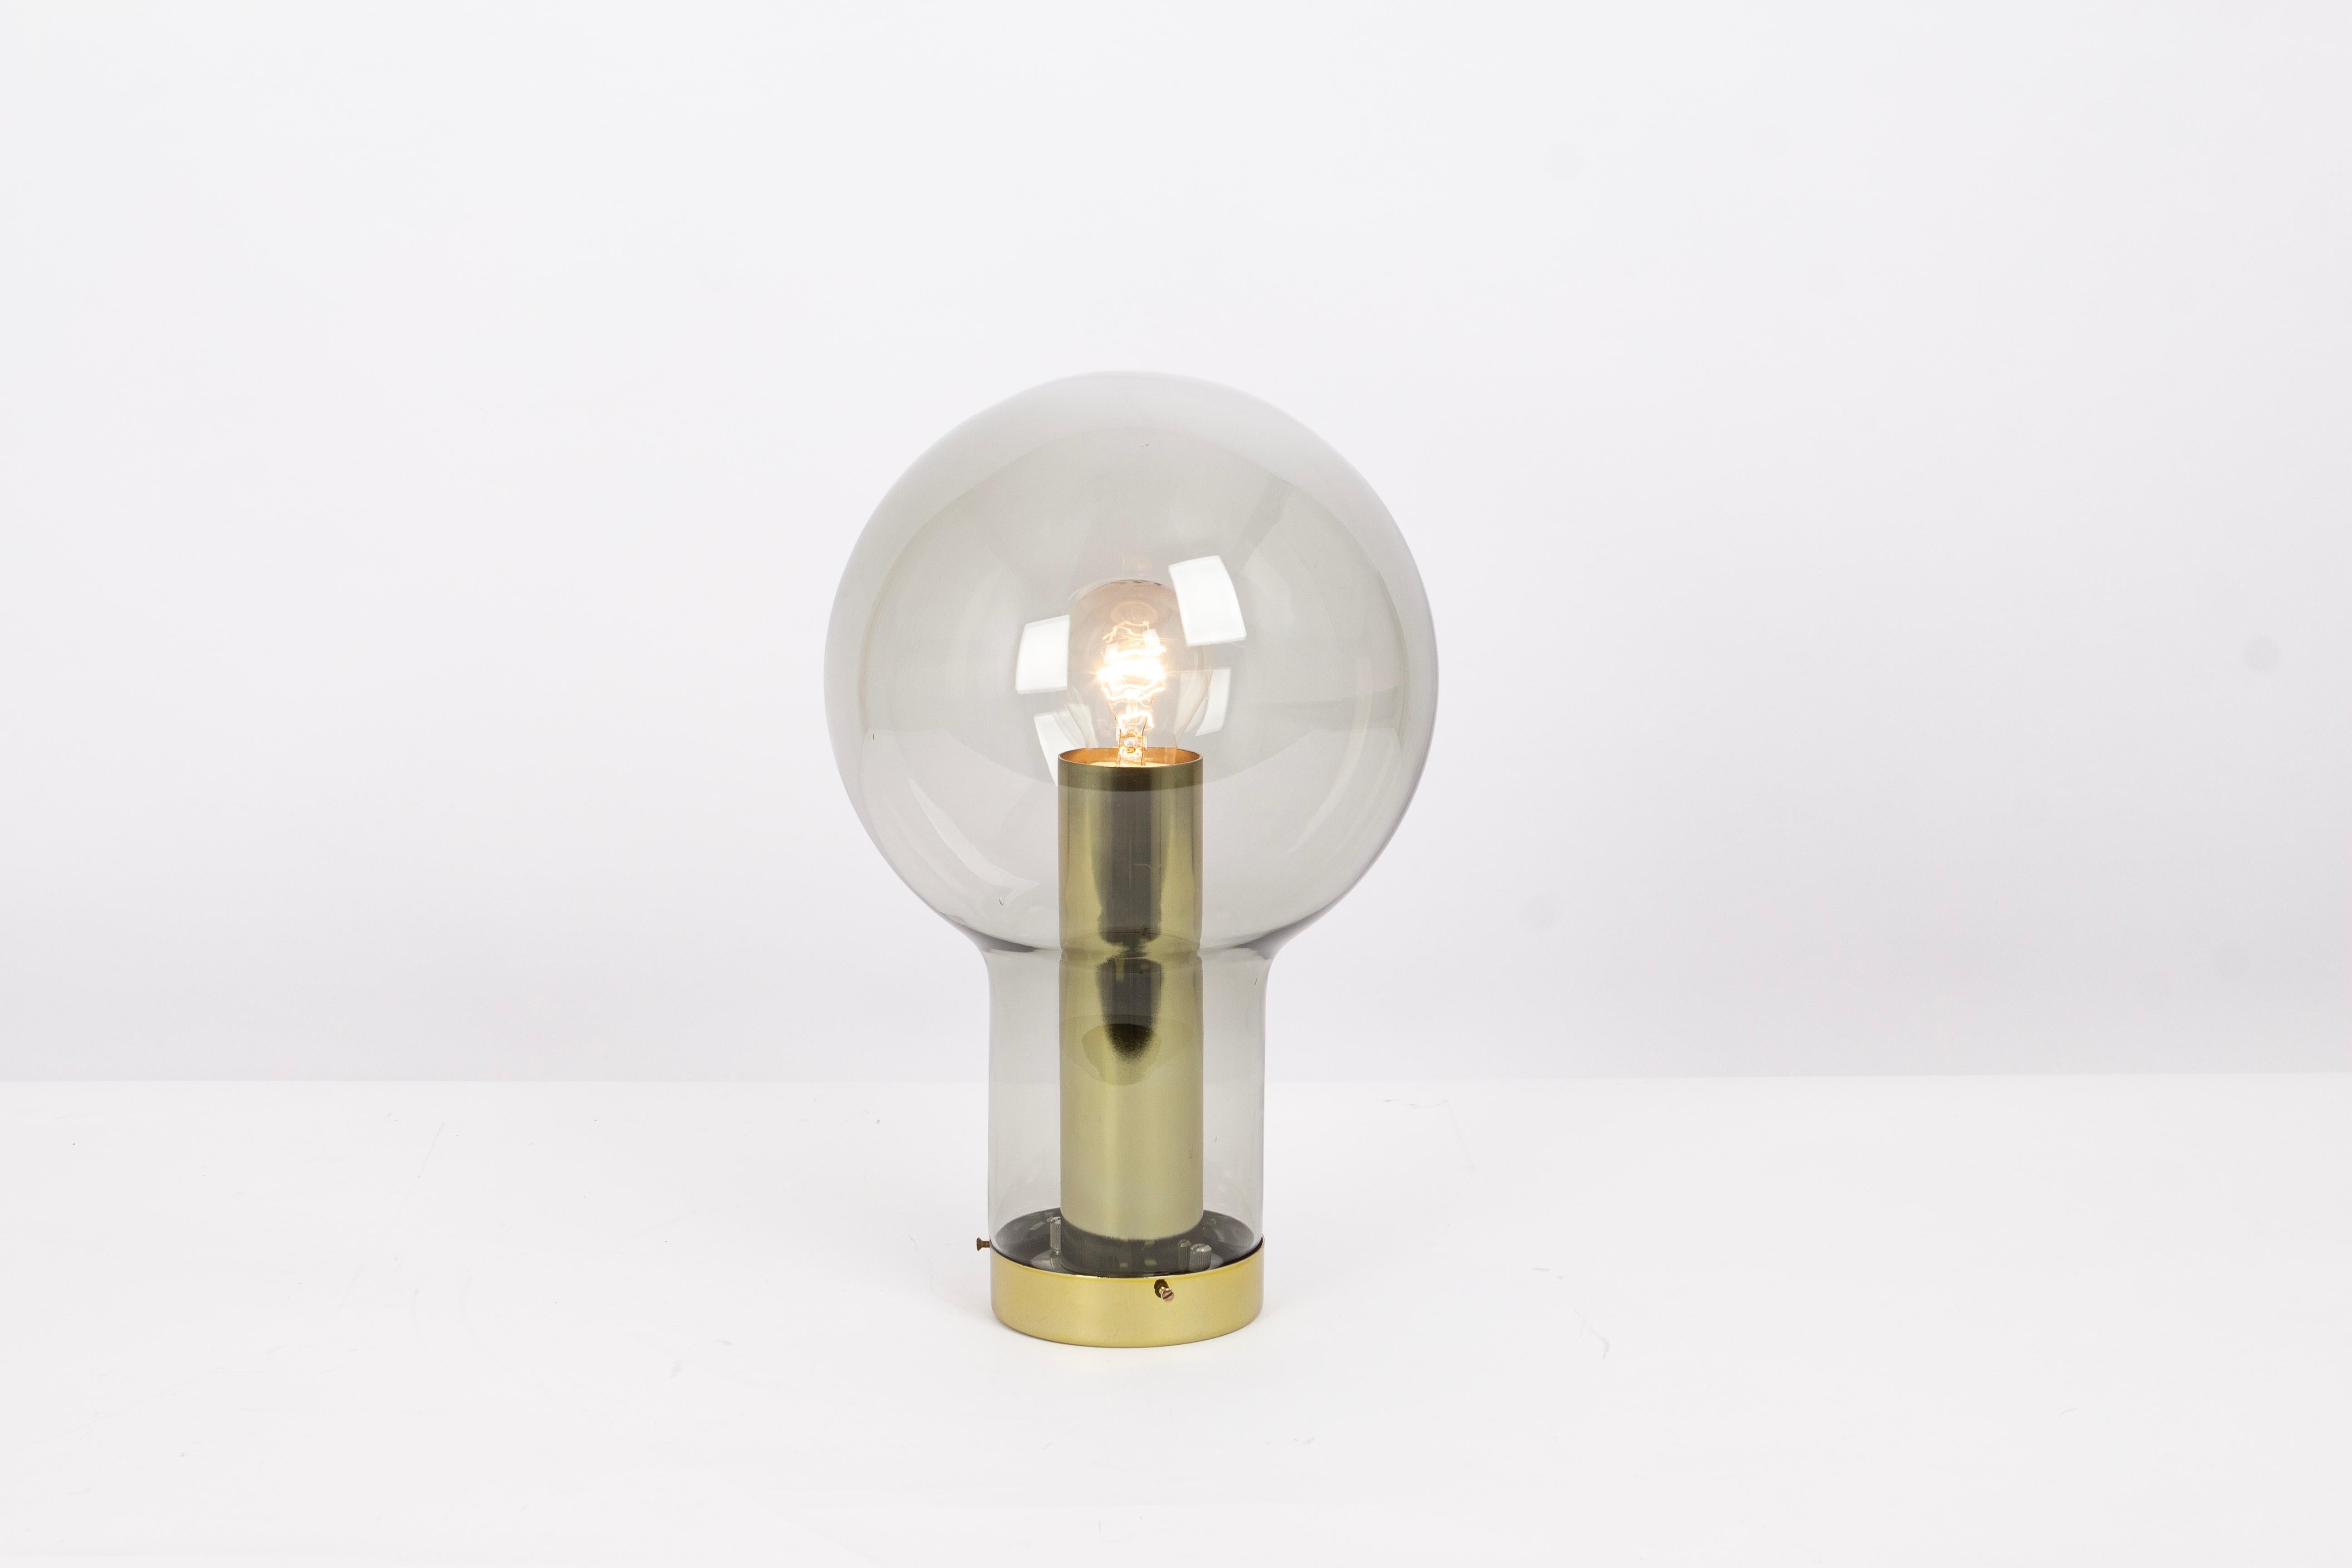 1 von 20 Maxi Bulb Flush mounts entworfen von Raak, Niederlande, 1970er Jahre.
Rauchglas in einer sehr schönen rauchigen braunen Farbe.

Hochwertig und in sehr gutem Zustand. Gereinigt, gut verkabelt und einsatzbereit. 

Jede Leuchte benötigt 1 x